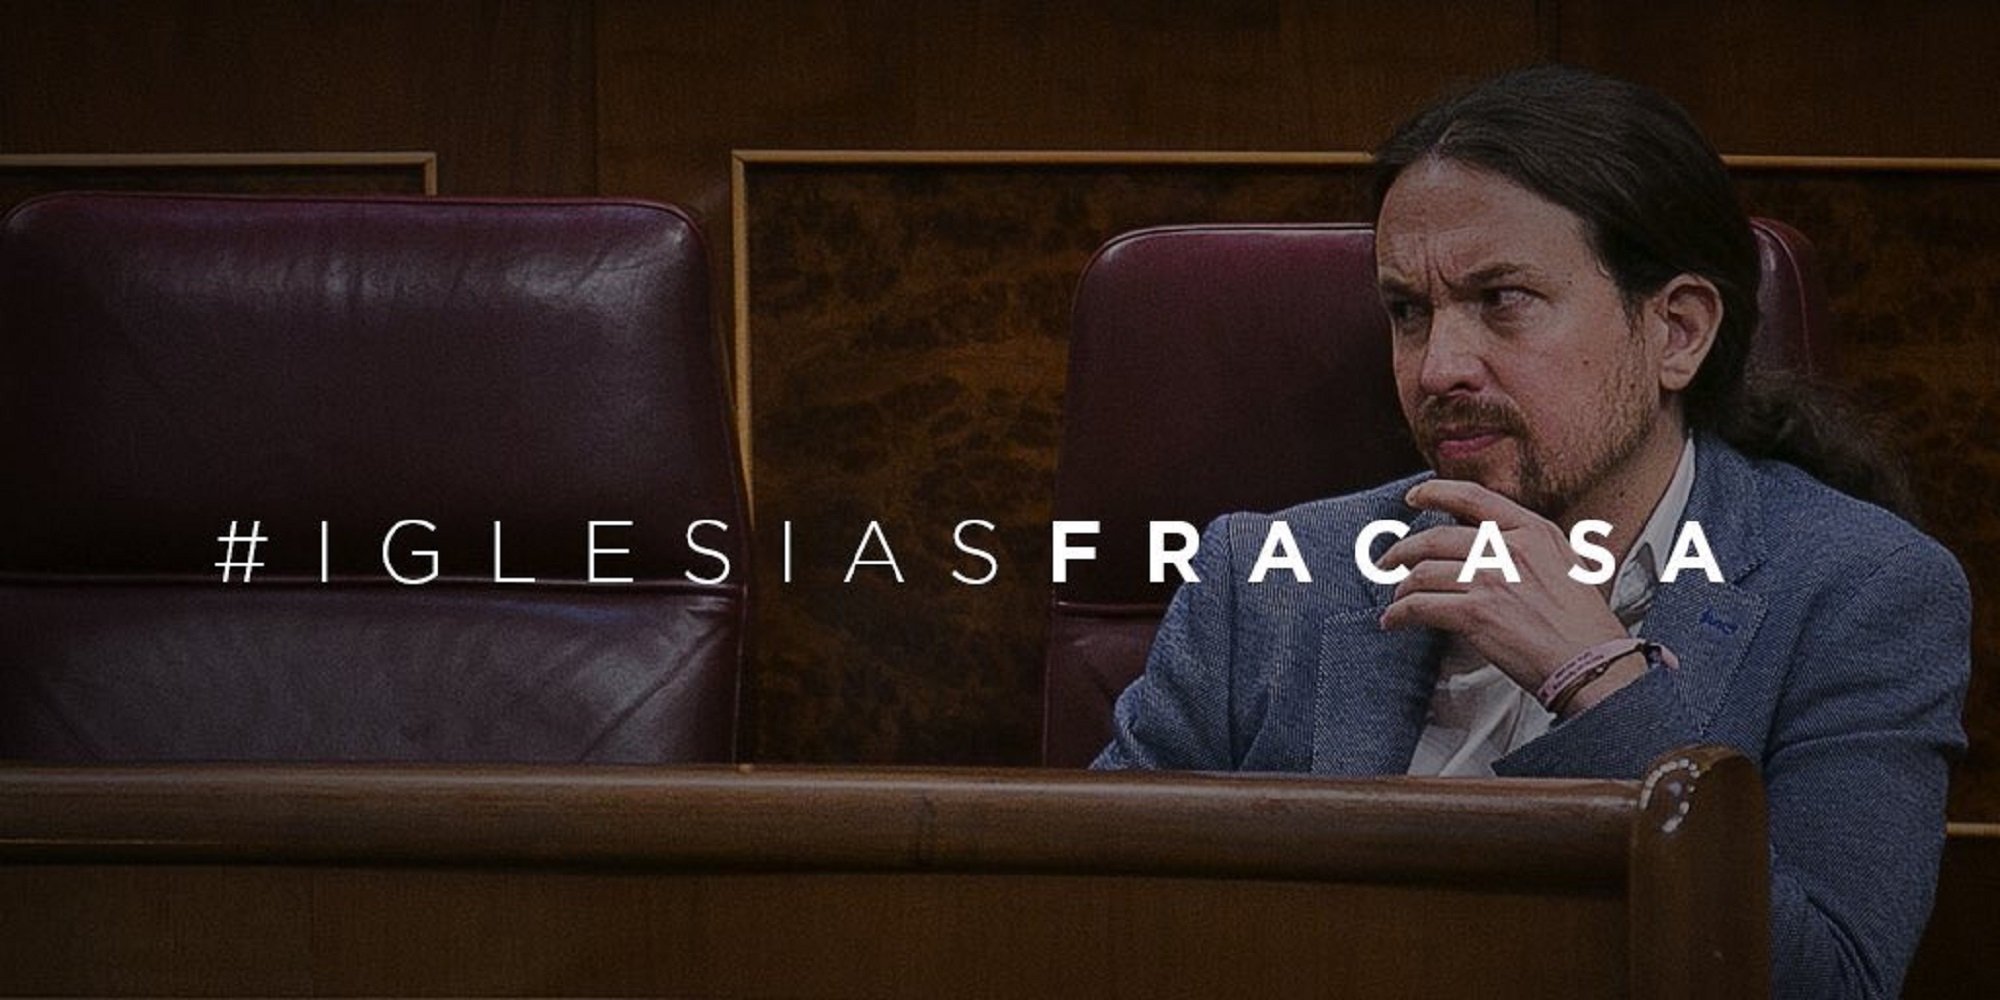 El PP es mofa de Podemos amb l'etiqueta #IglesiasFracasa